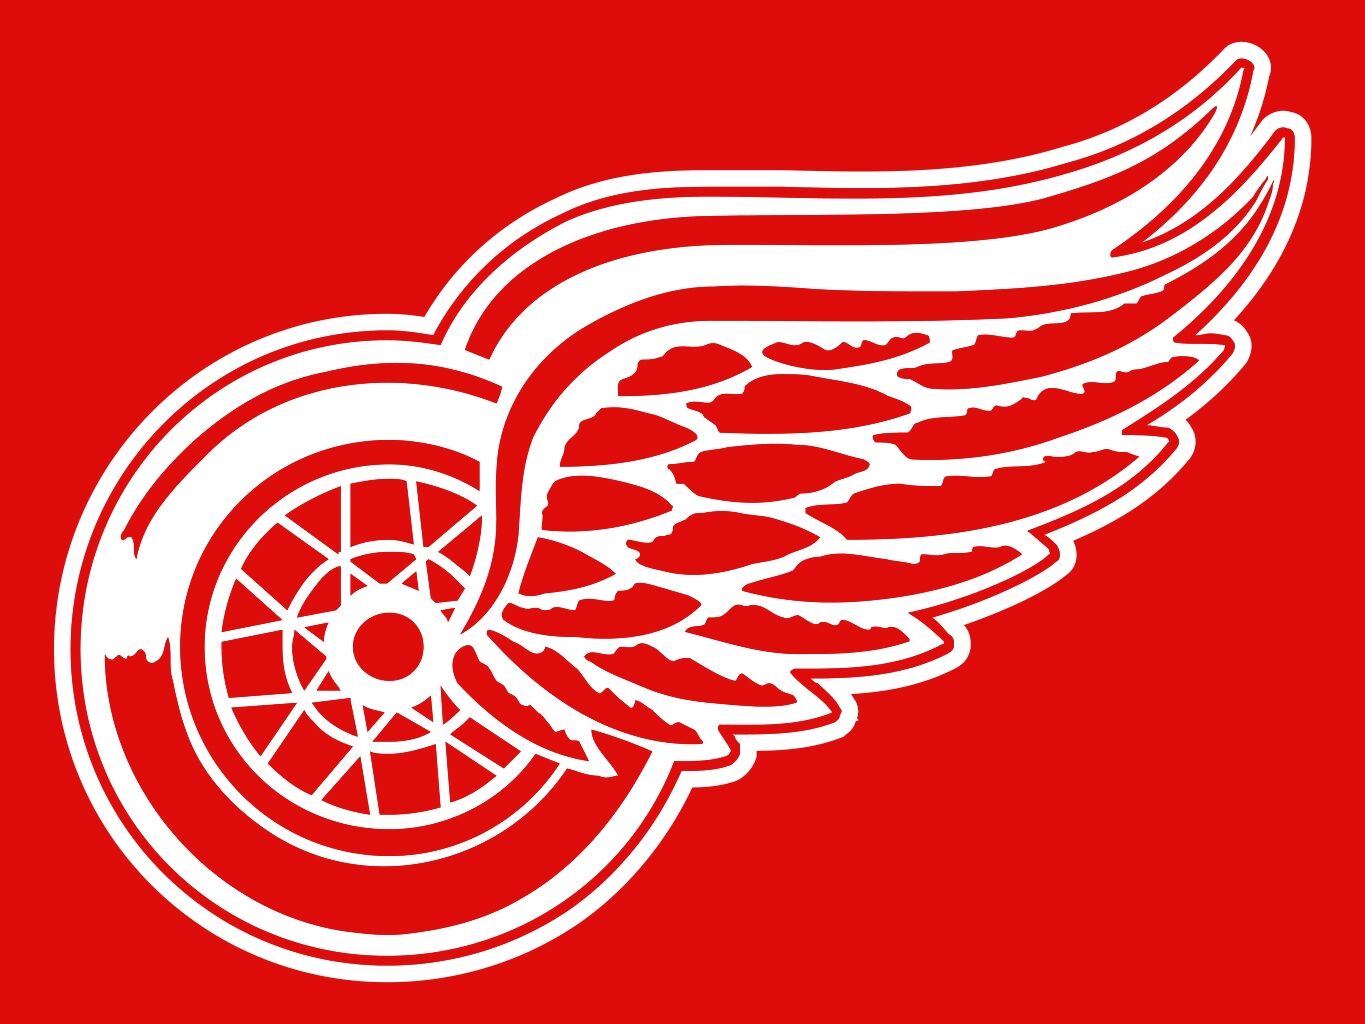 File:1952 Detroit Red Wings.jpg - Wikipedia